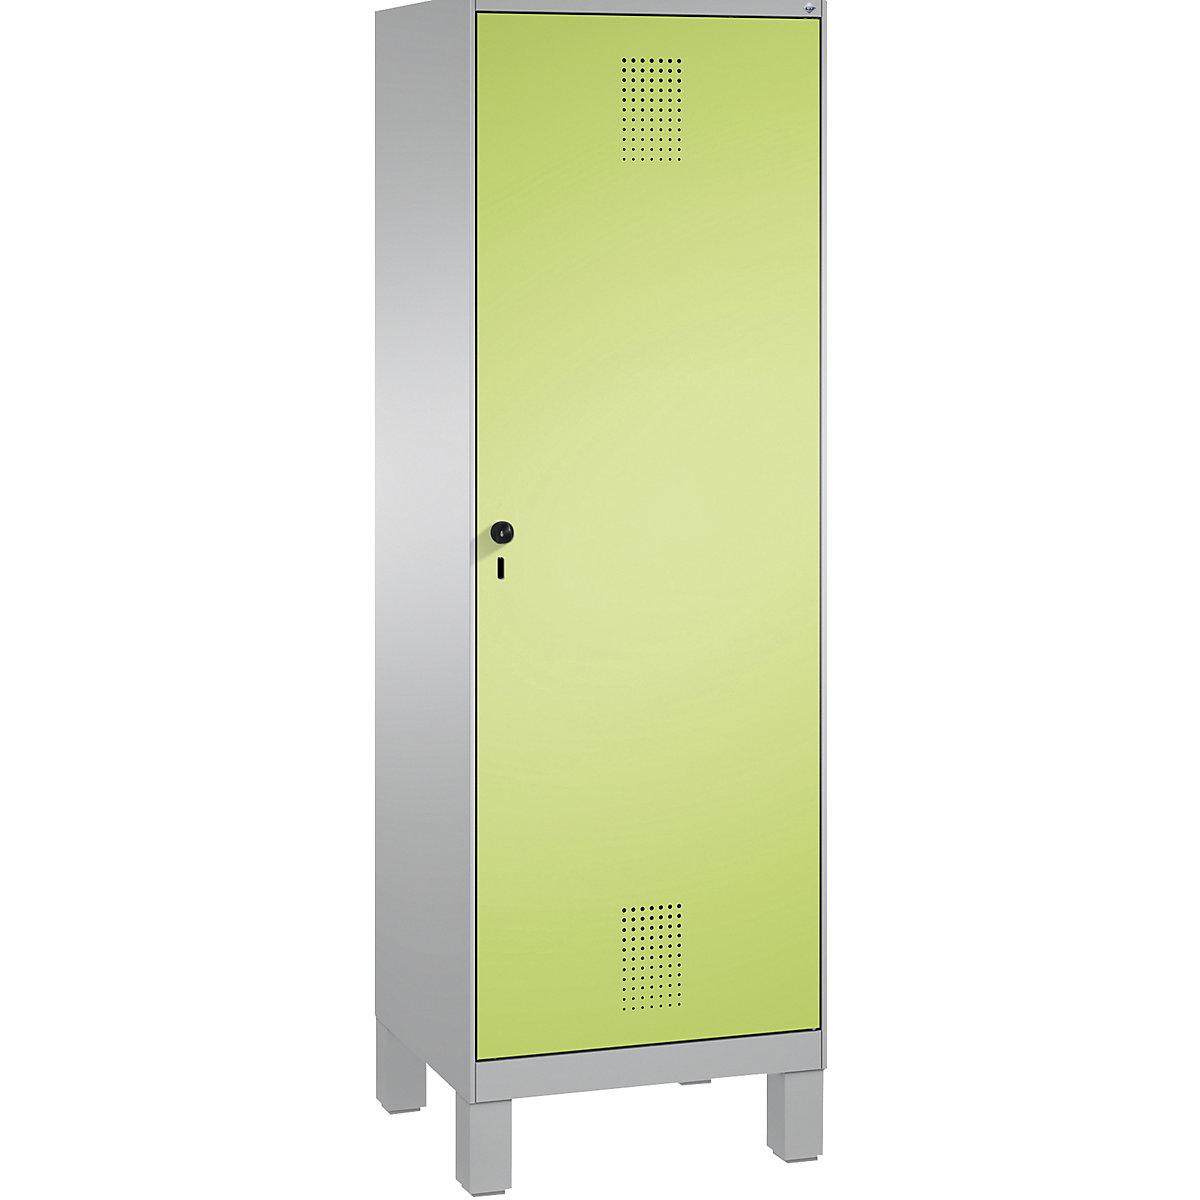 Šatní skříň s nohami EVOLO s dveřmi přes 2 oddíly – C+P, 2 oddíly, 1 dveře, šířka oddílu 300 mm, bílý hliník / viridianová zelená-13